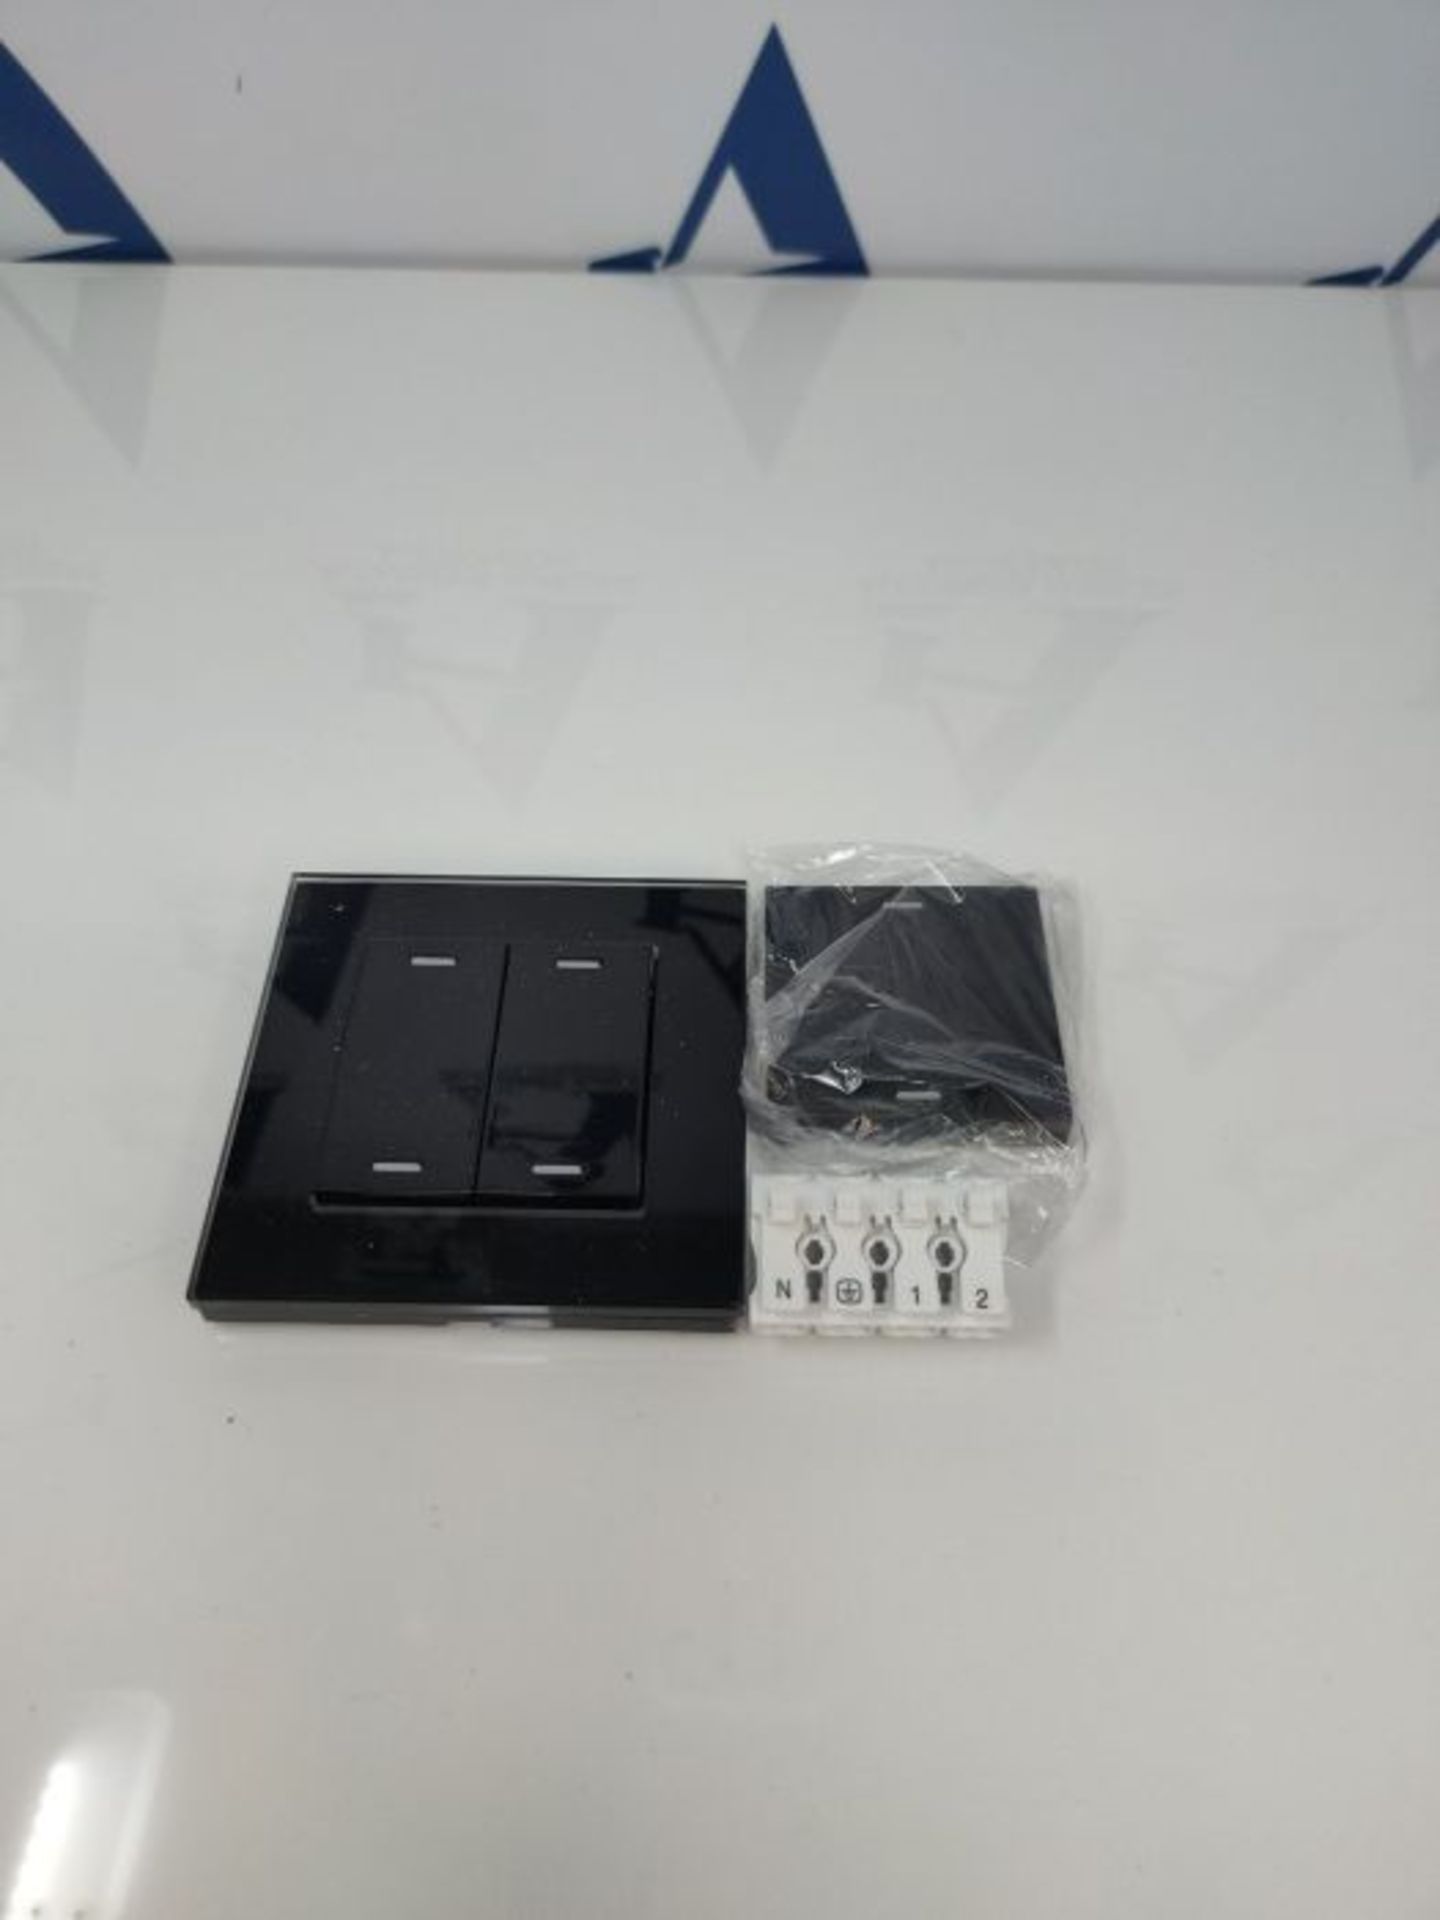 RRP £51.00 R�e�t�r�o�t�o�u�c�h� �2�8�0�3� �F�r�i�e�n�d�s� �o�f� �H�u�e� �S�m�a�r�t� �S�w�i�t�c�h� �- - Image 3 of 3